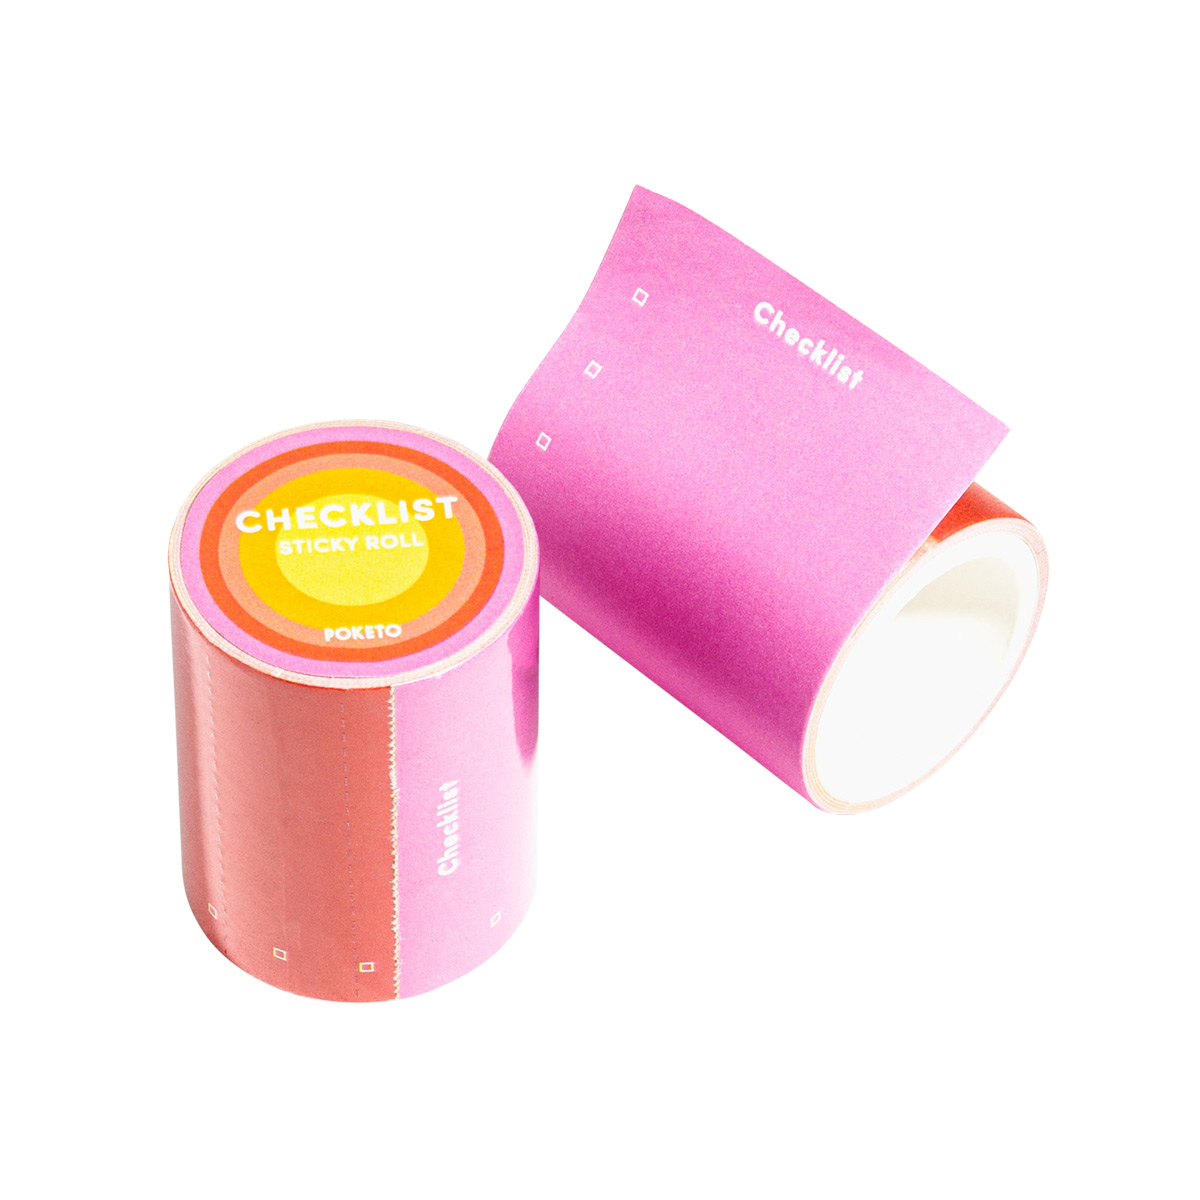 Poketo Checklist Sticky Note Roll Pink Pkg/30